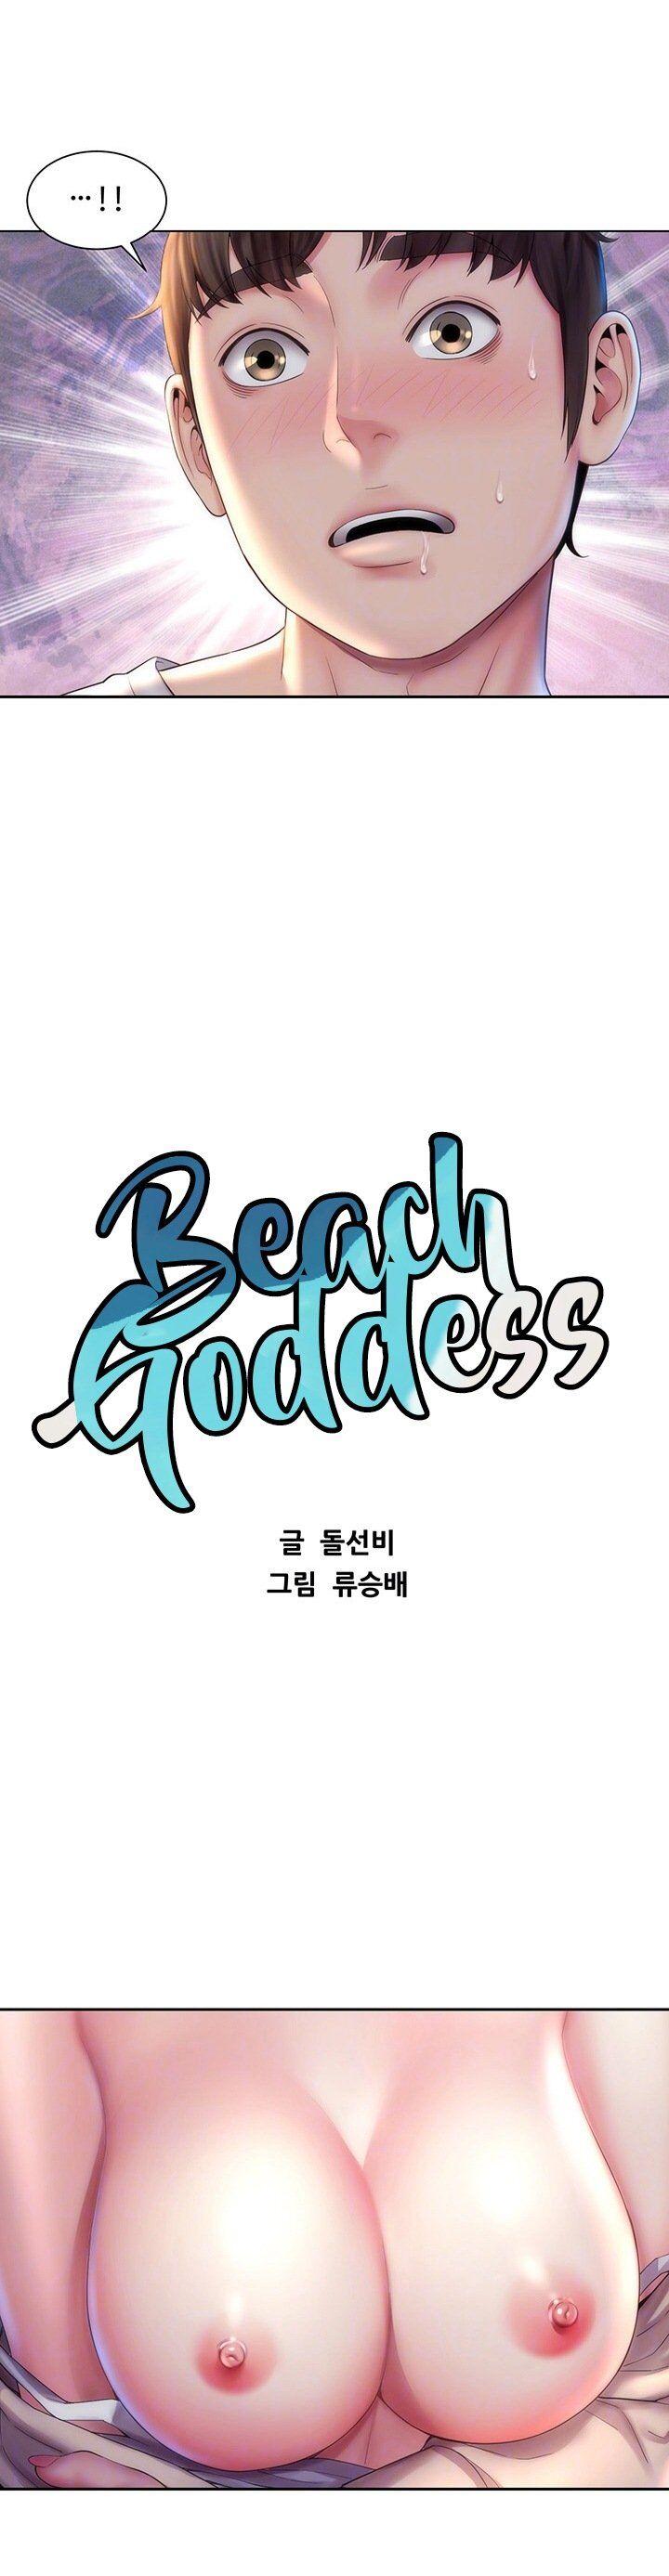 Beach Goddess 232